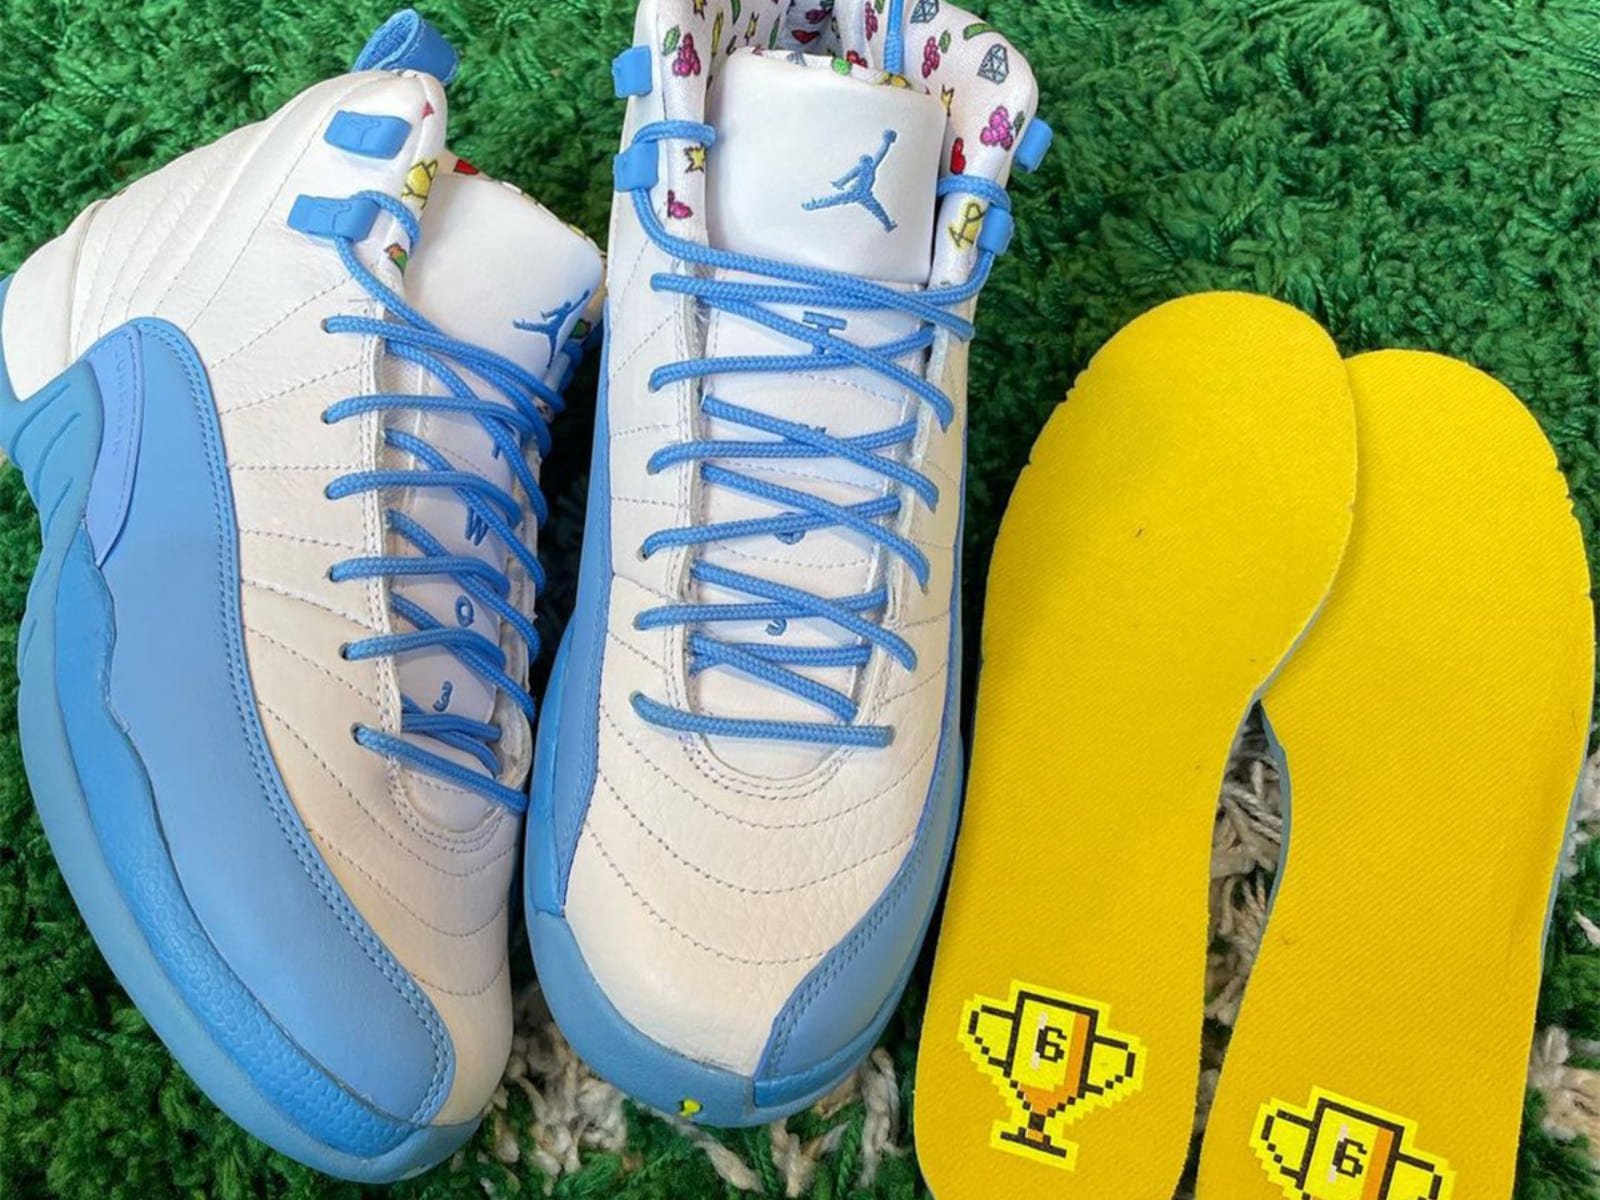 Nike Air Jordan 12 童鞋全新配色「Emoji」亮相！超吸睛藍白配色搭配滿版表情符號，潮爸潮媽不衝嗎？